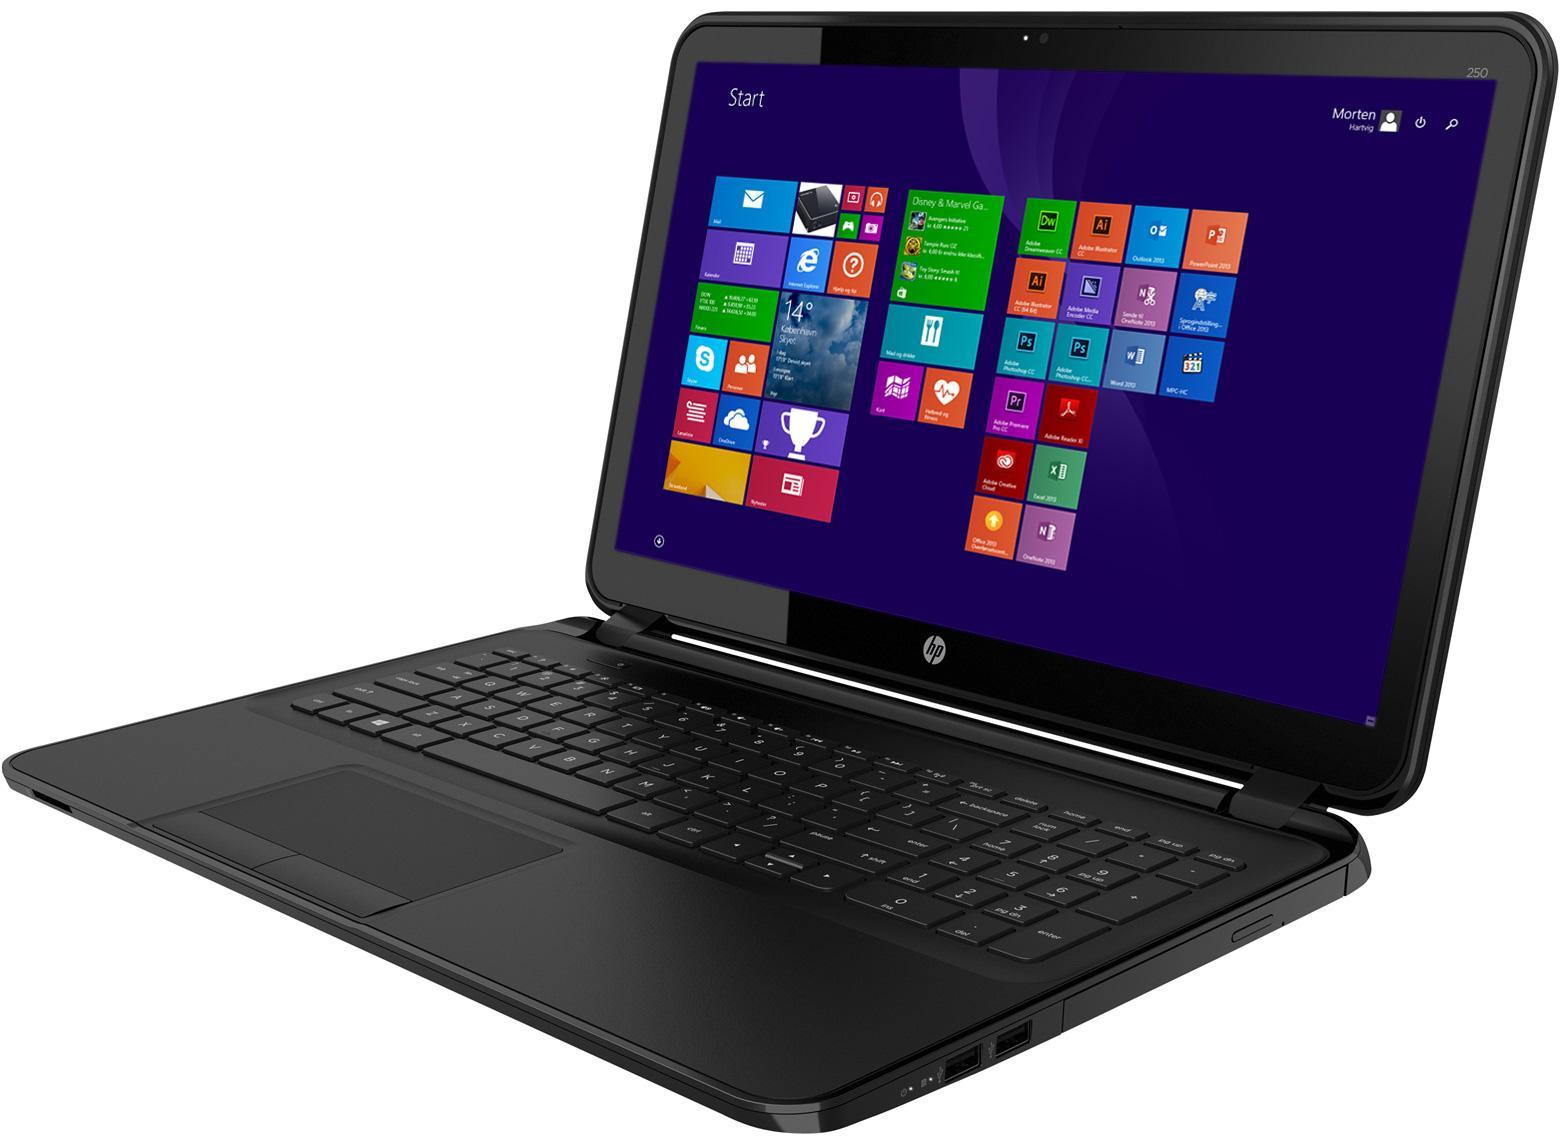 Недорогой ноутбук HP 250 G3 с Windows 8.1